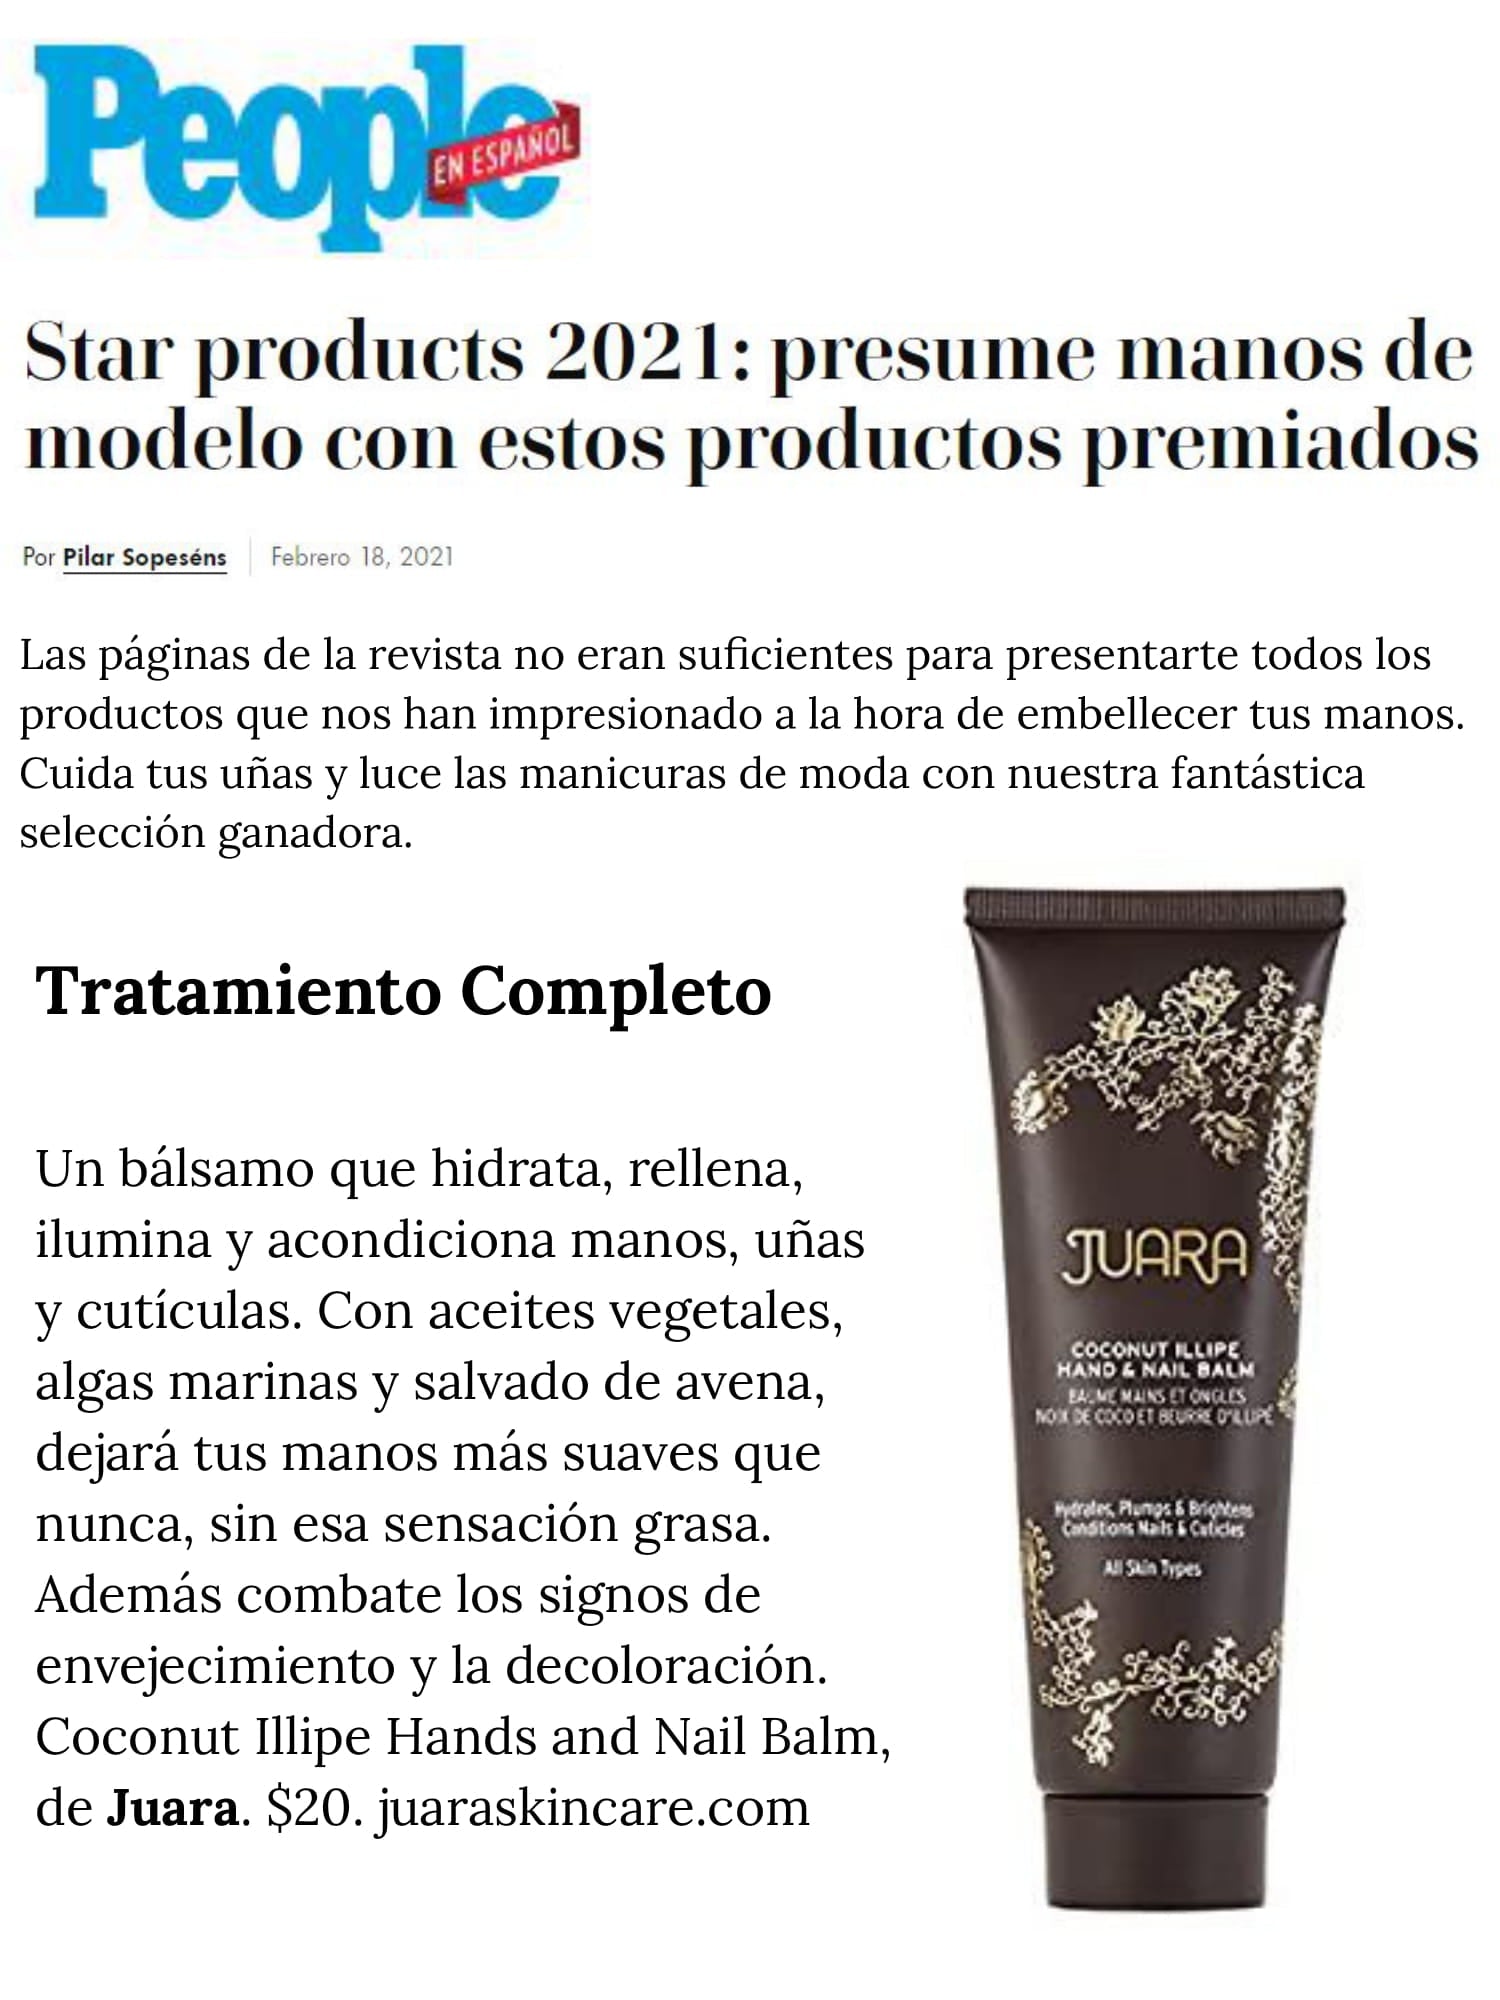 PEOPLE EN ESPANOL : Star Products 2021 : Presume Manos de Modele Con Estos Productos Premiados JUARA Skincare